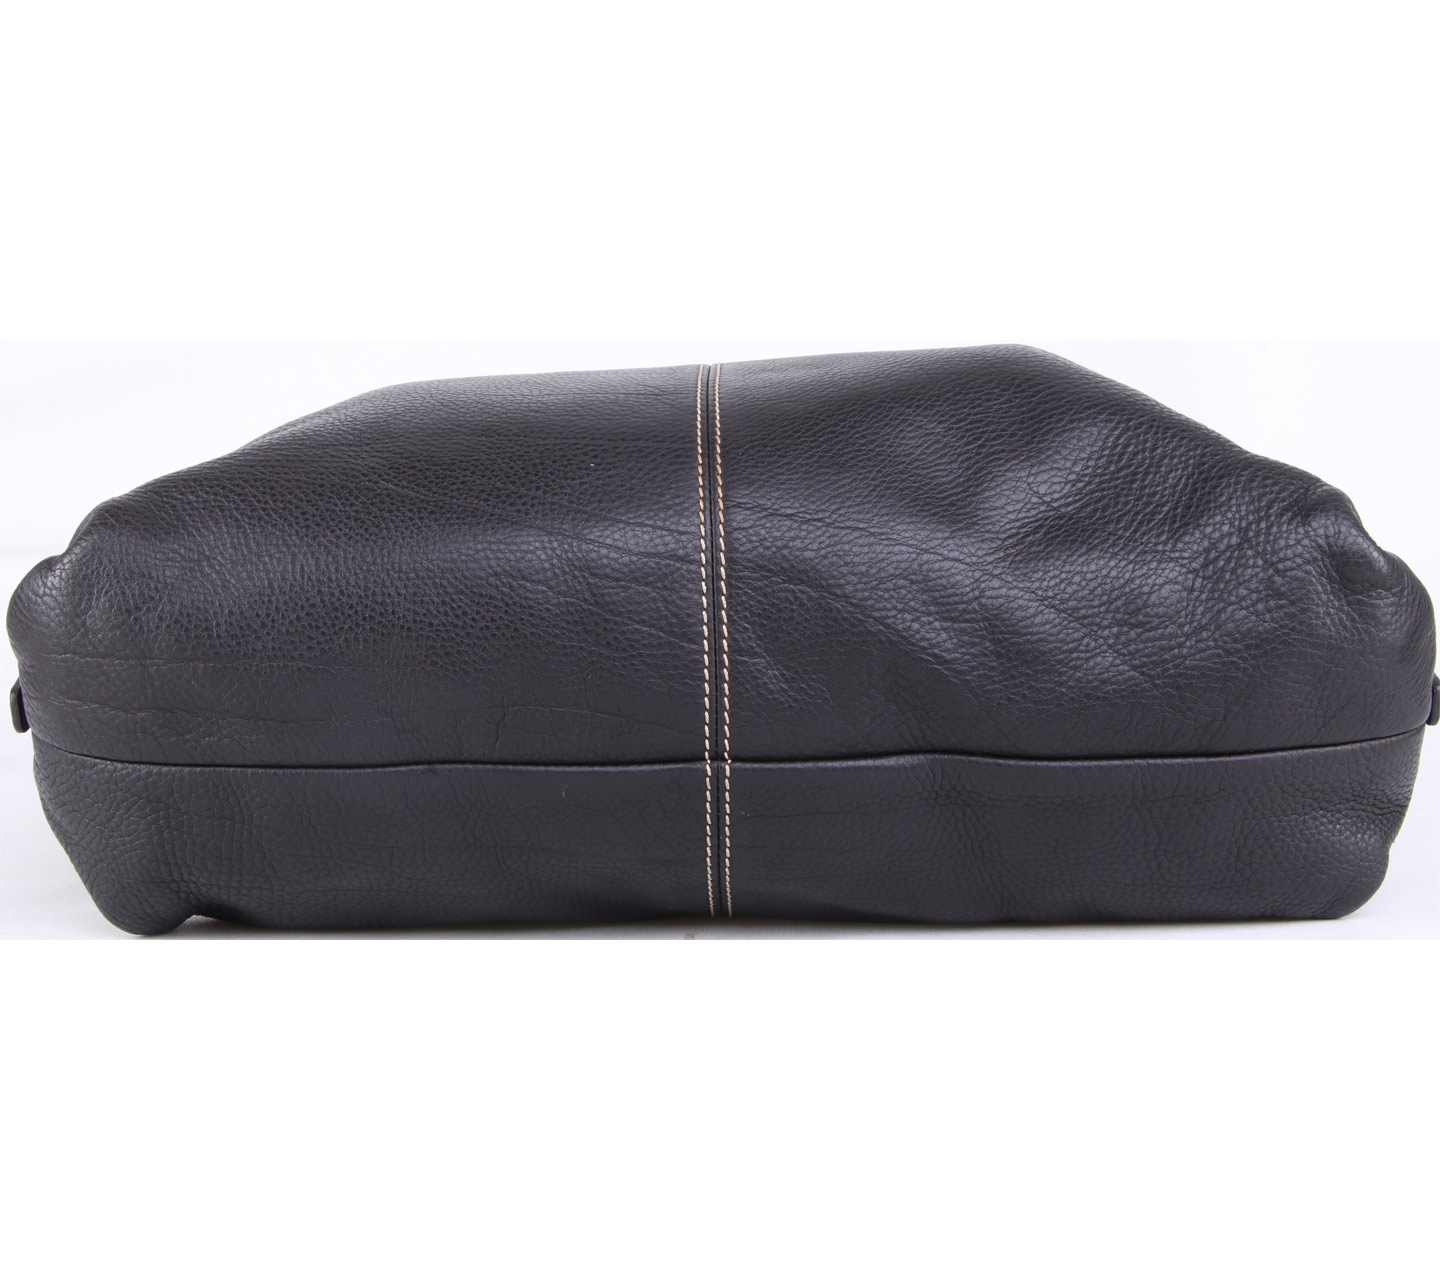 Dooney & Bourke Black Leather Shoulder Bag